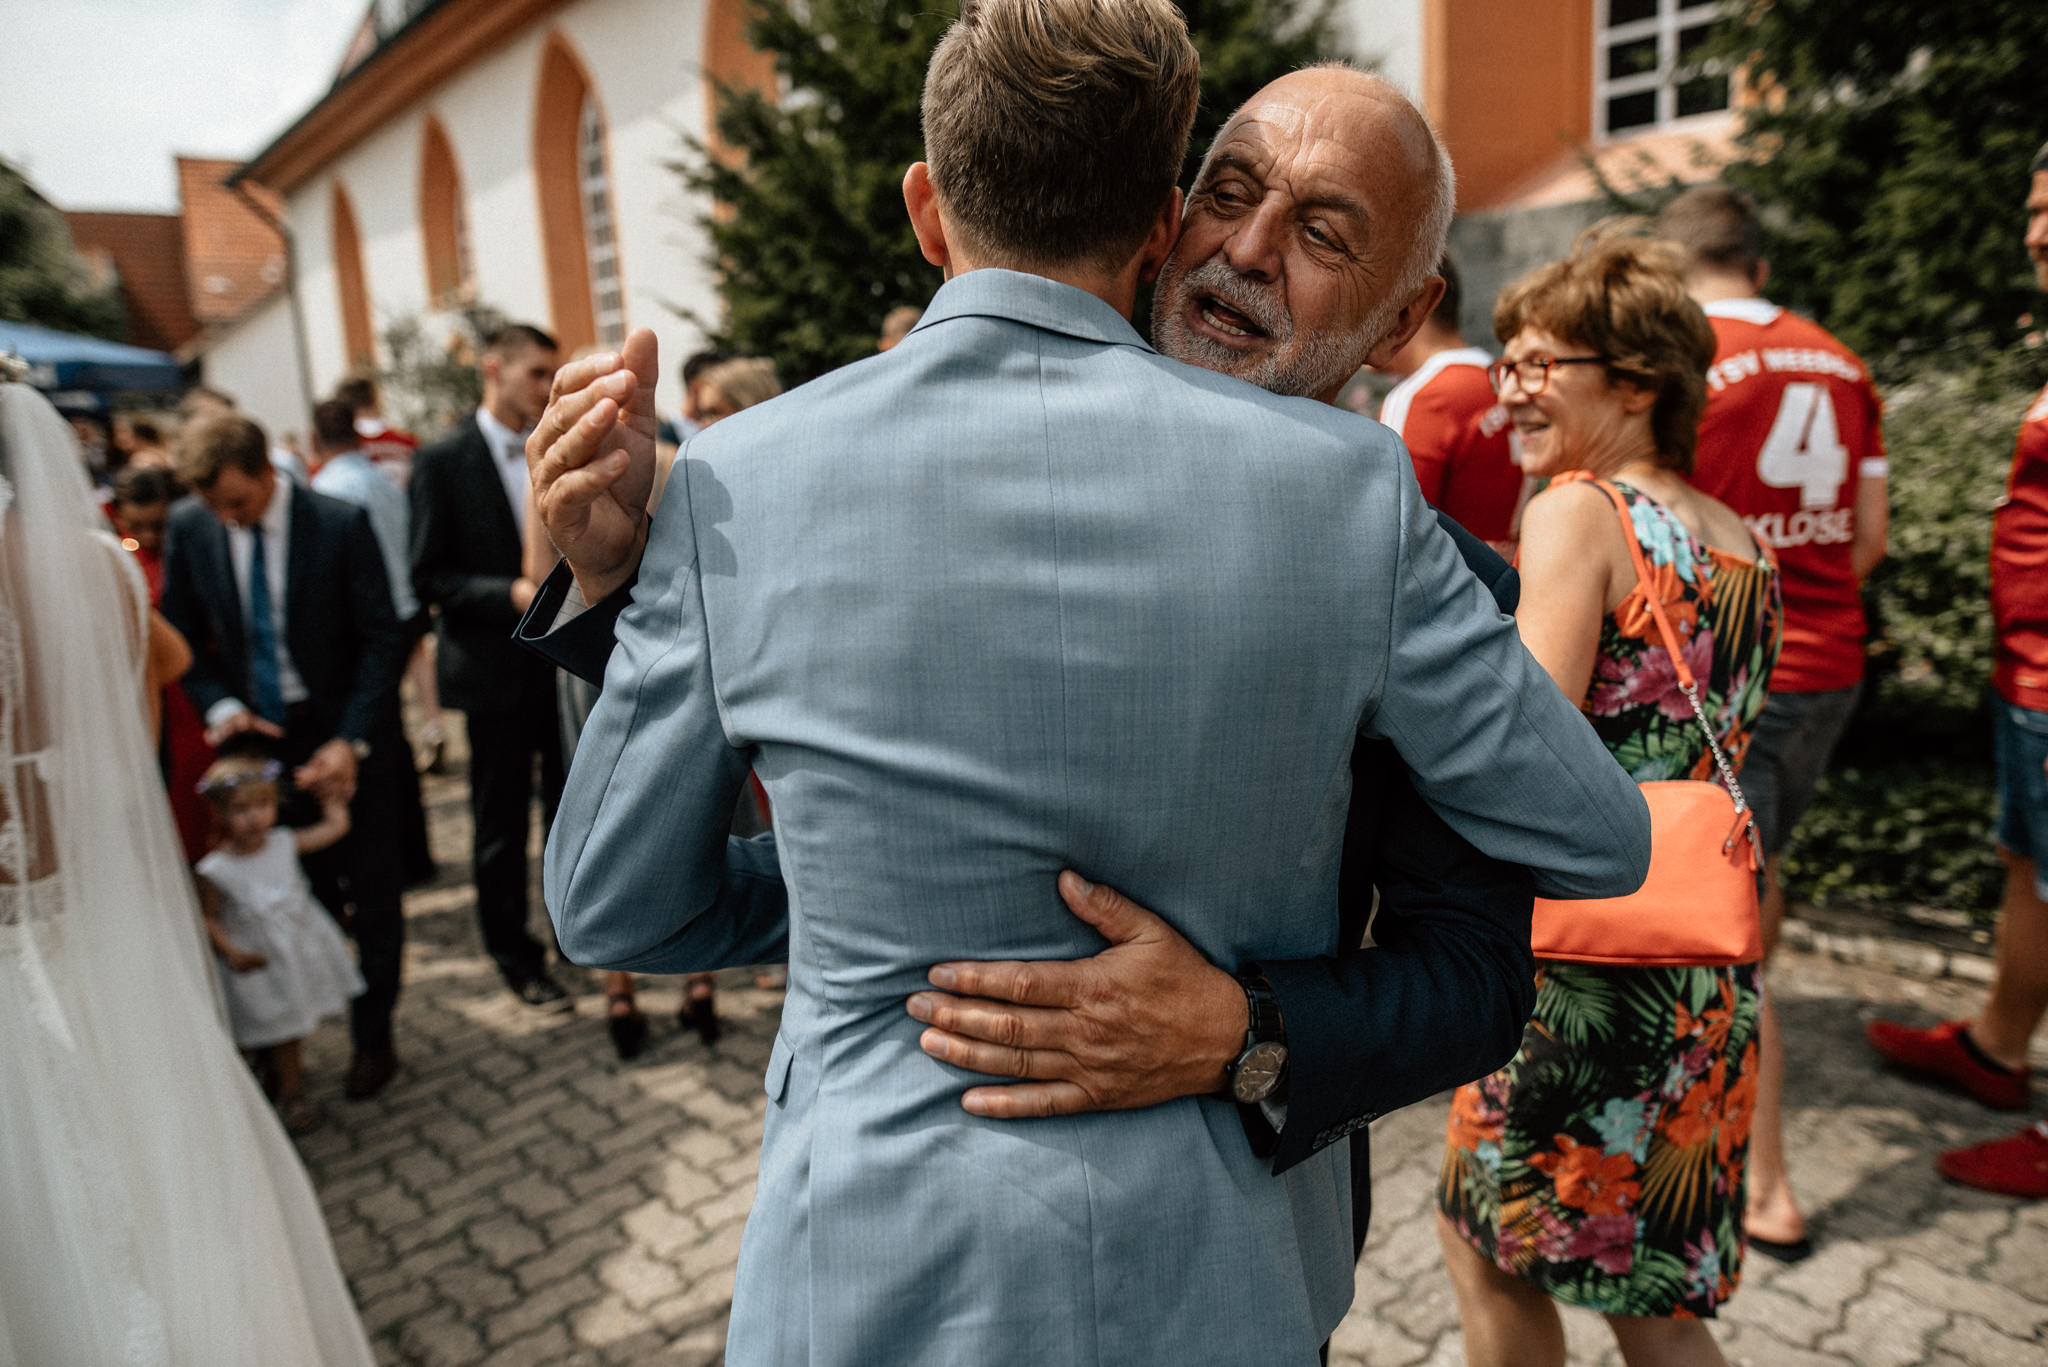 Timo Hess Fotografie Hochzeitsfotograf Leipzig Hochzeitsreportage Coburg Lena Und Frank Hochzeit In Coburg Sonnefeld